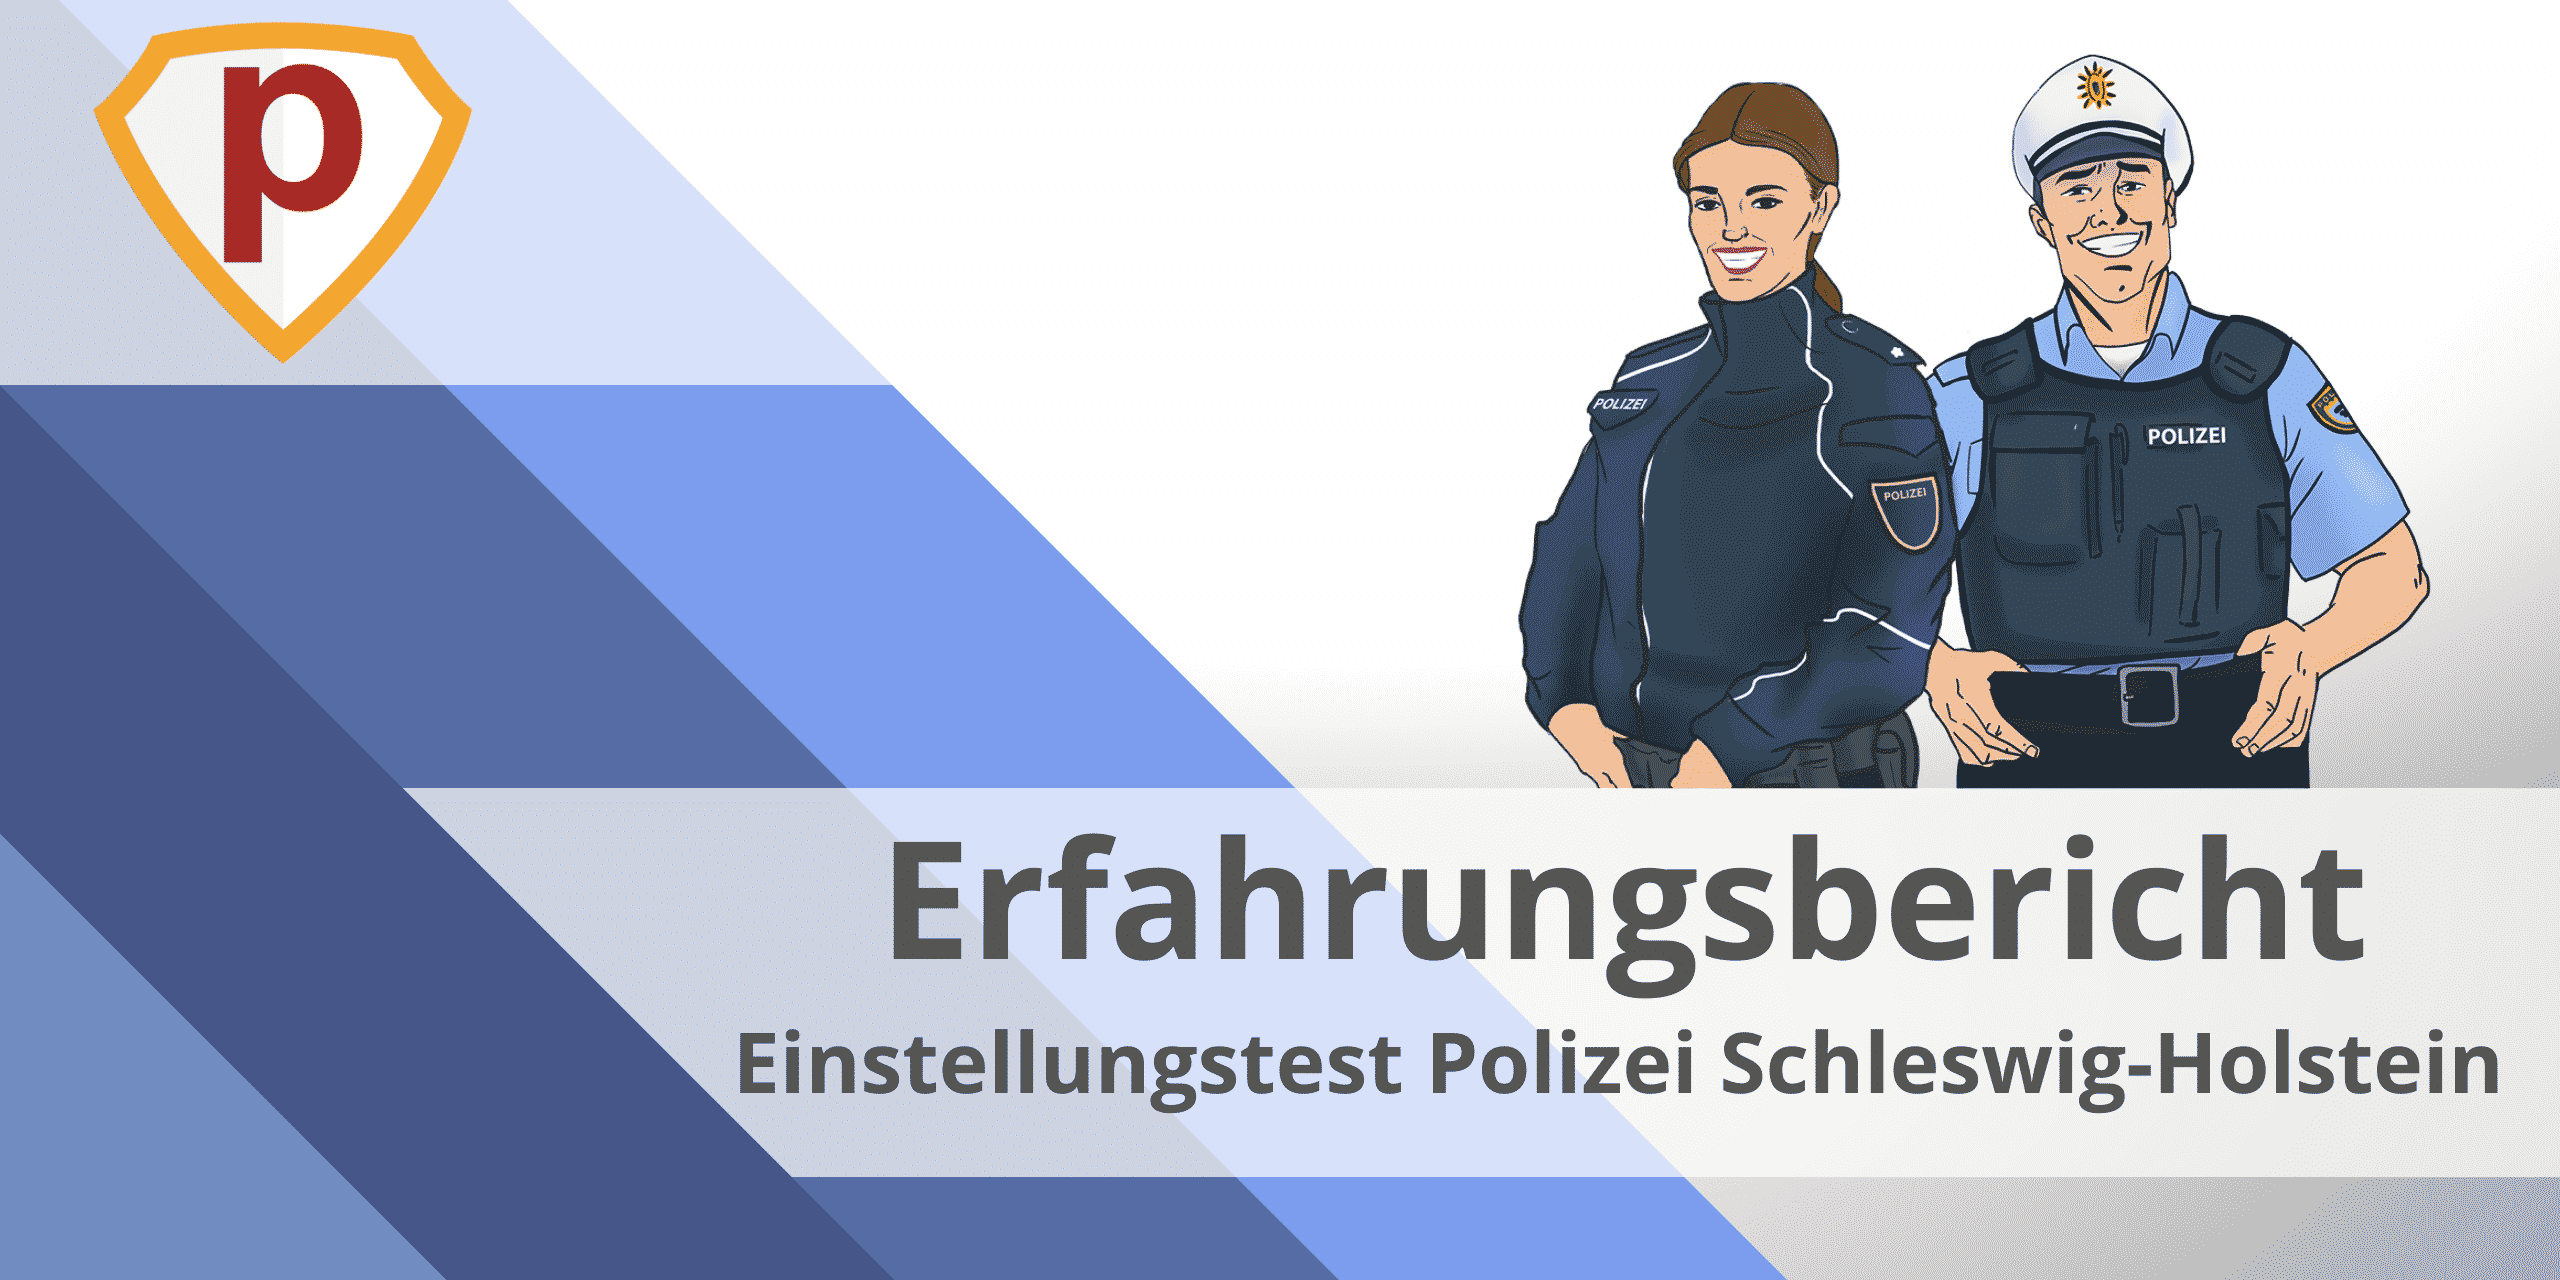 Erfahrungsbericht Einstellungstest Polizei Schleswig-Holstein